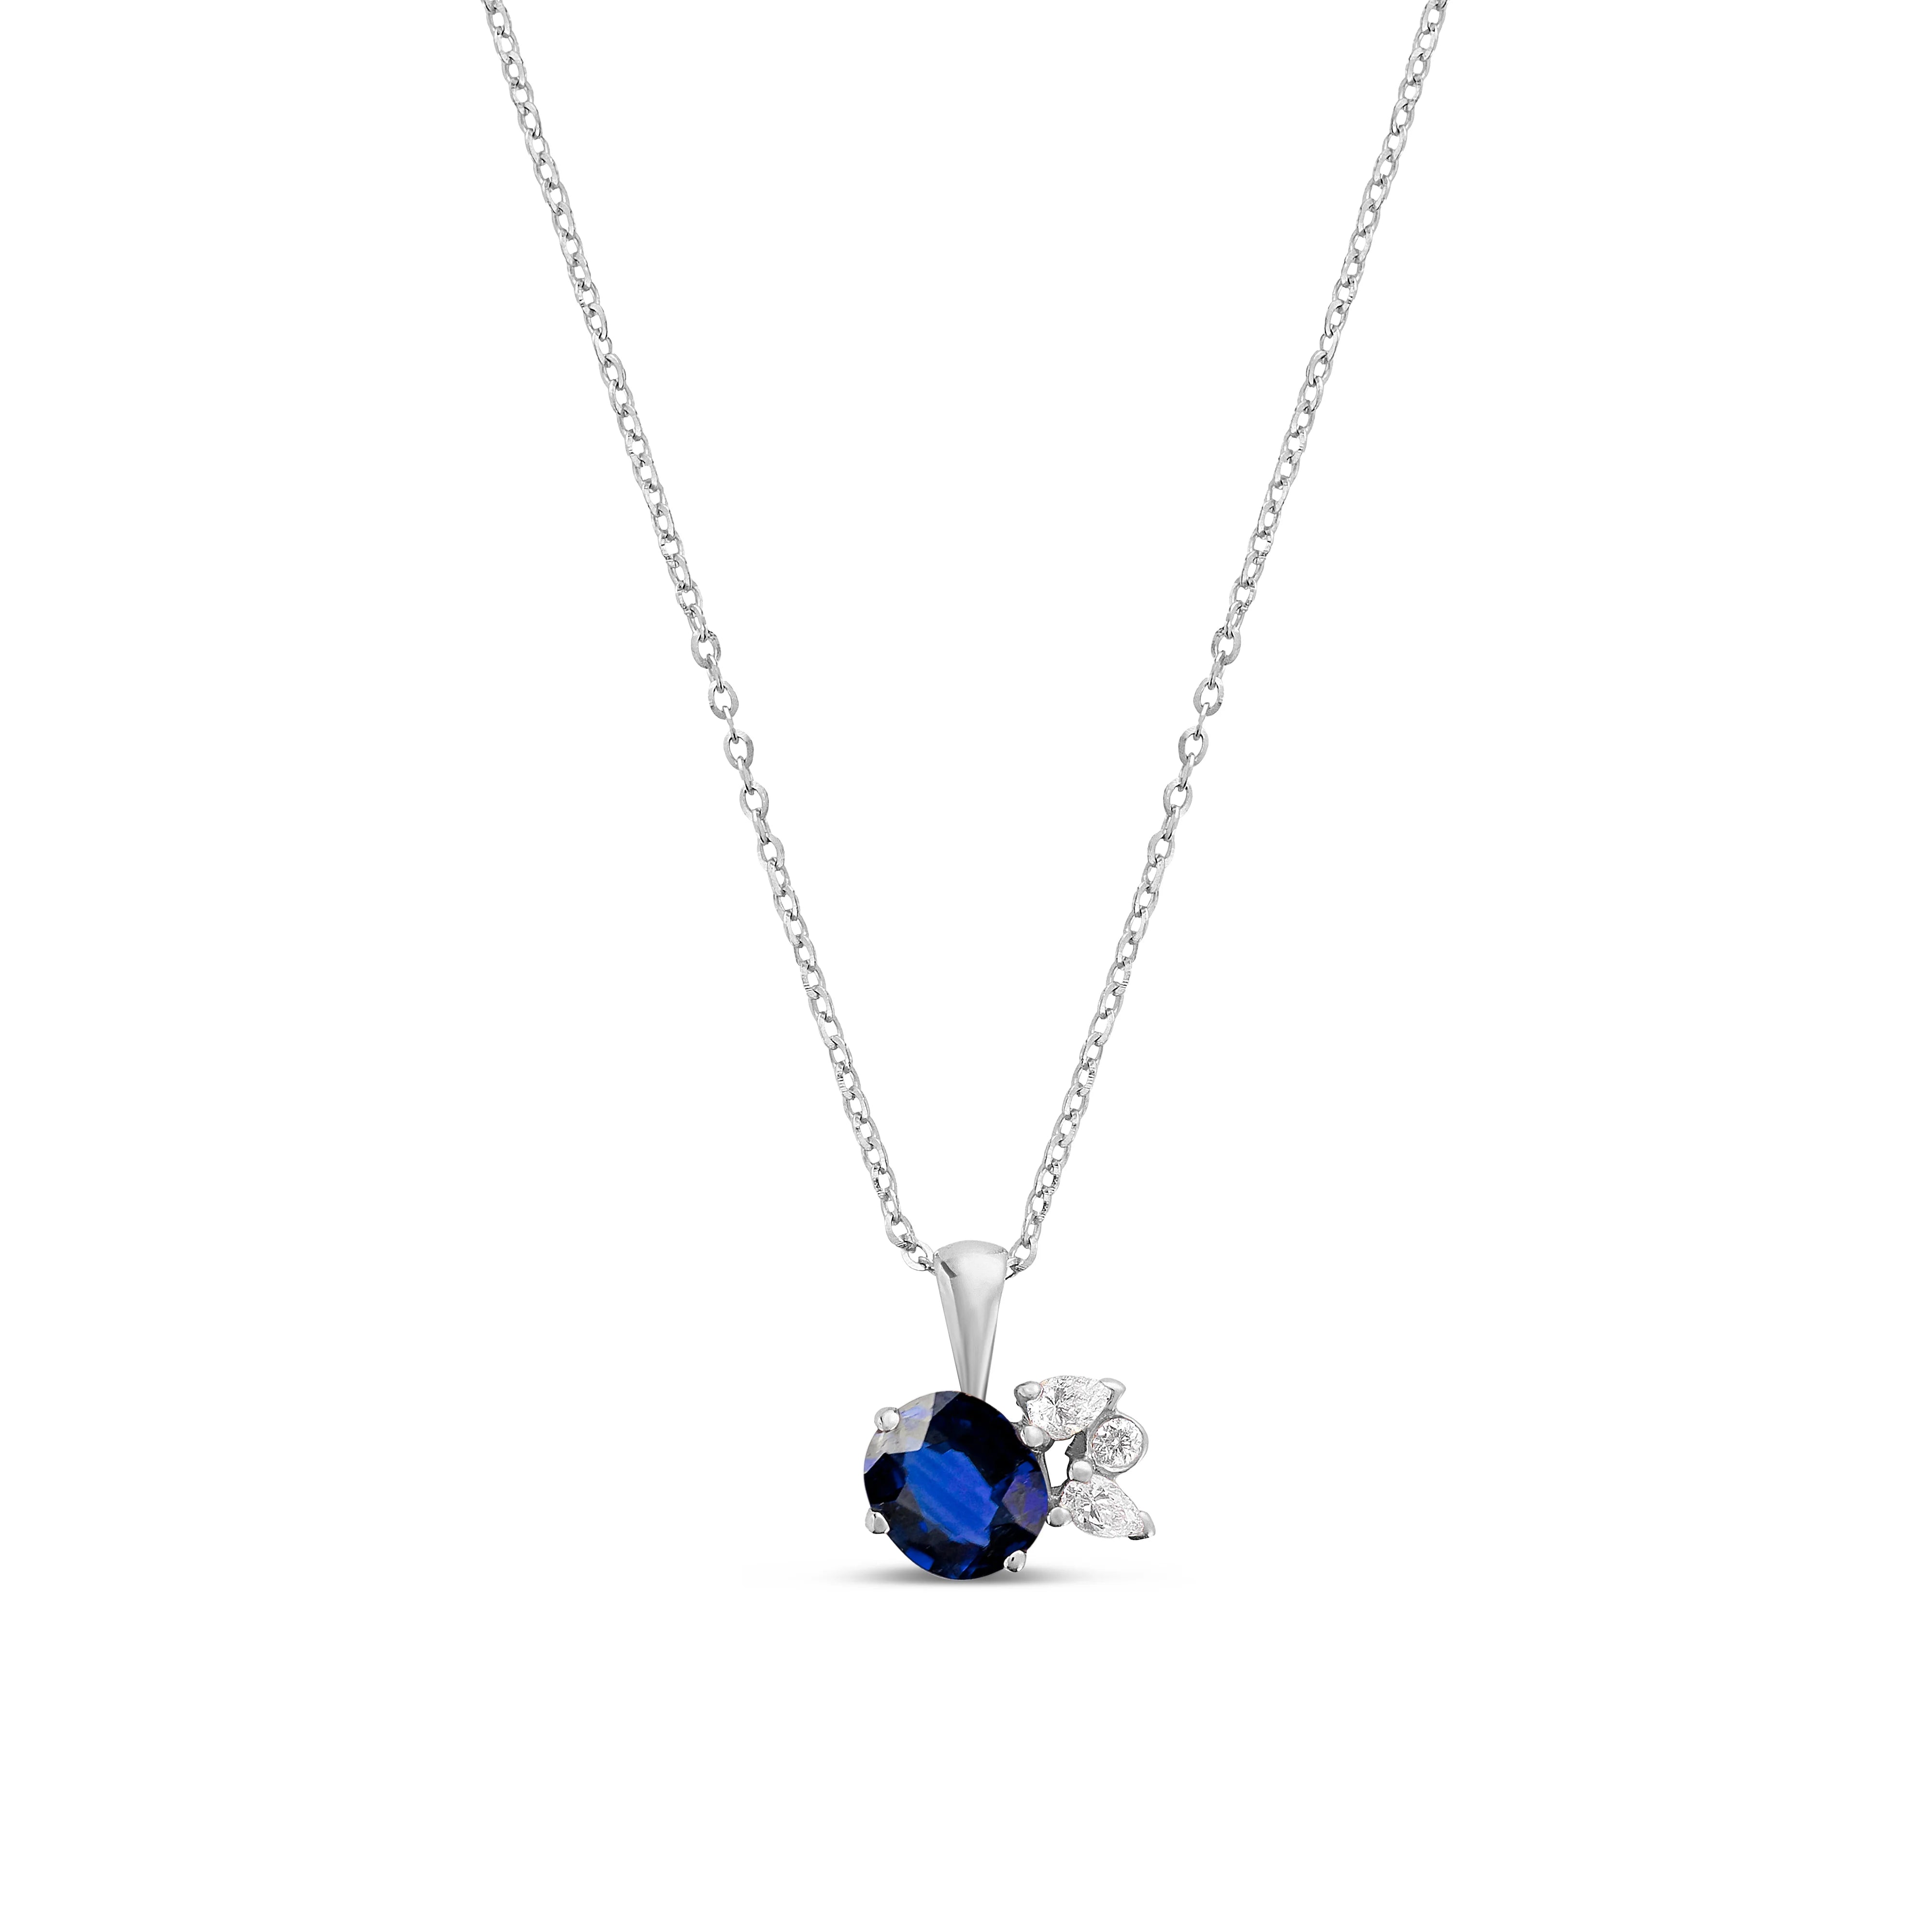 Collier en Or 18 Carat avec Saphir Bleu et Diamants - Moribana - Politains